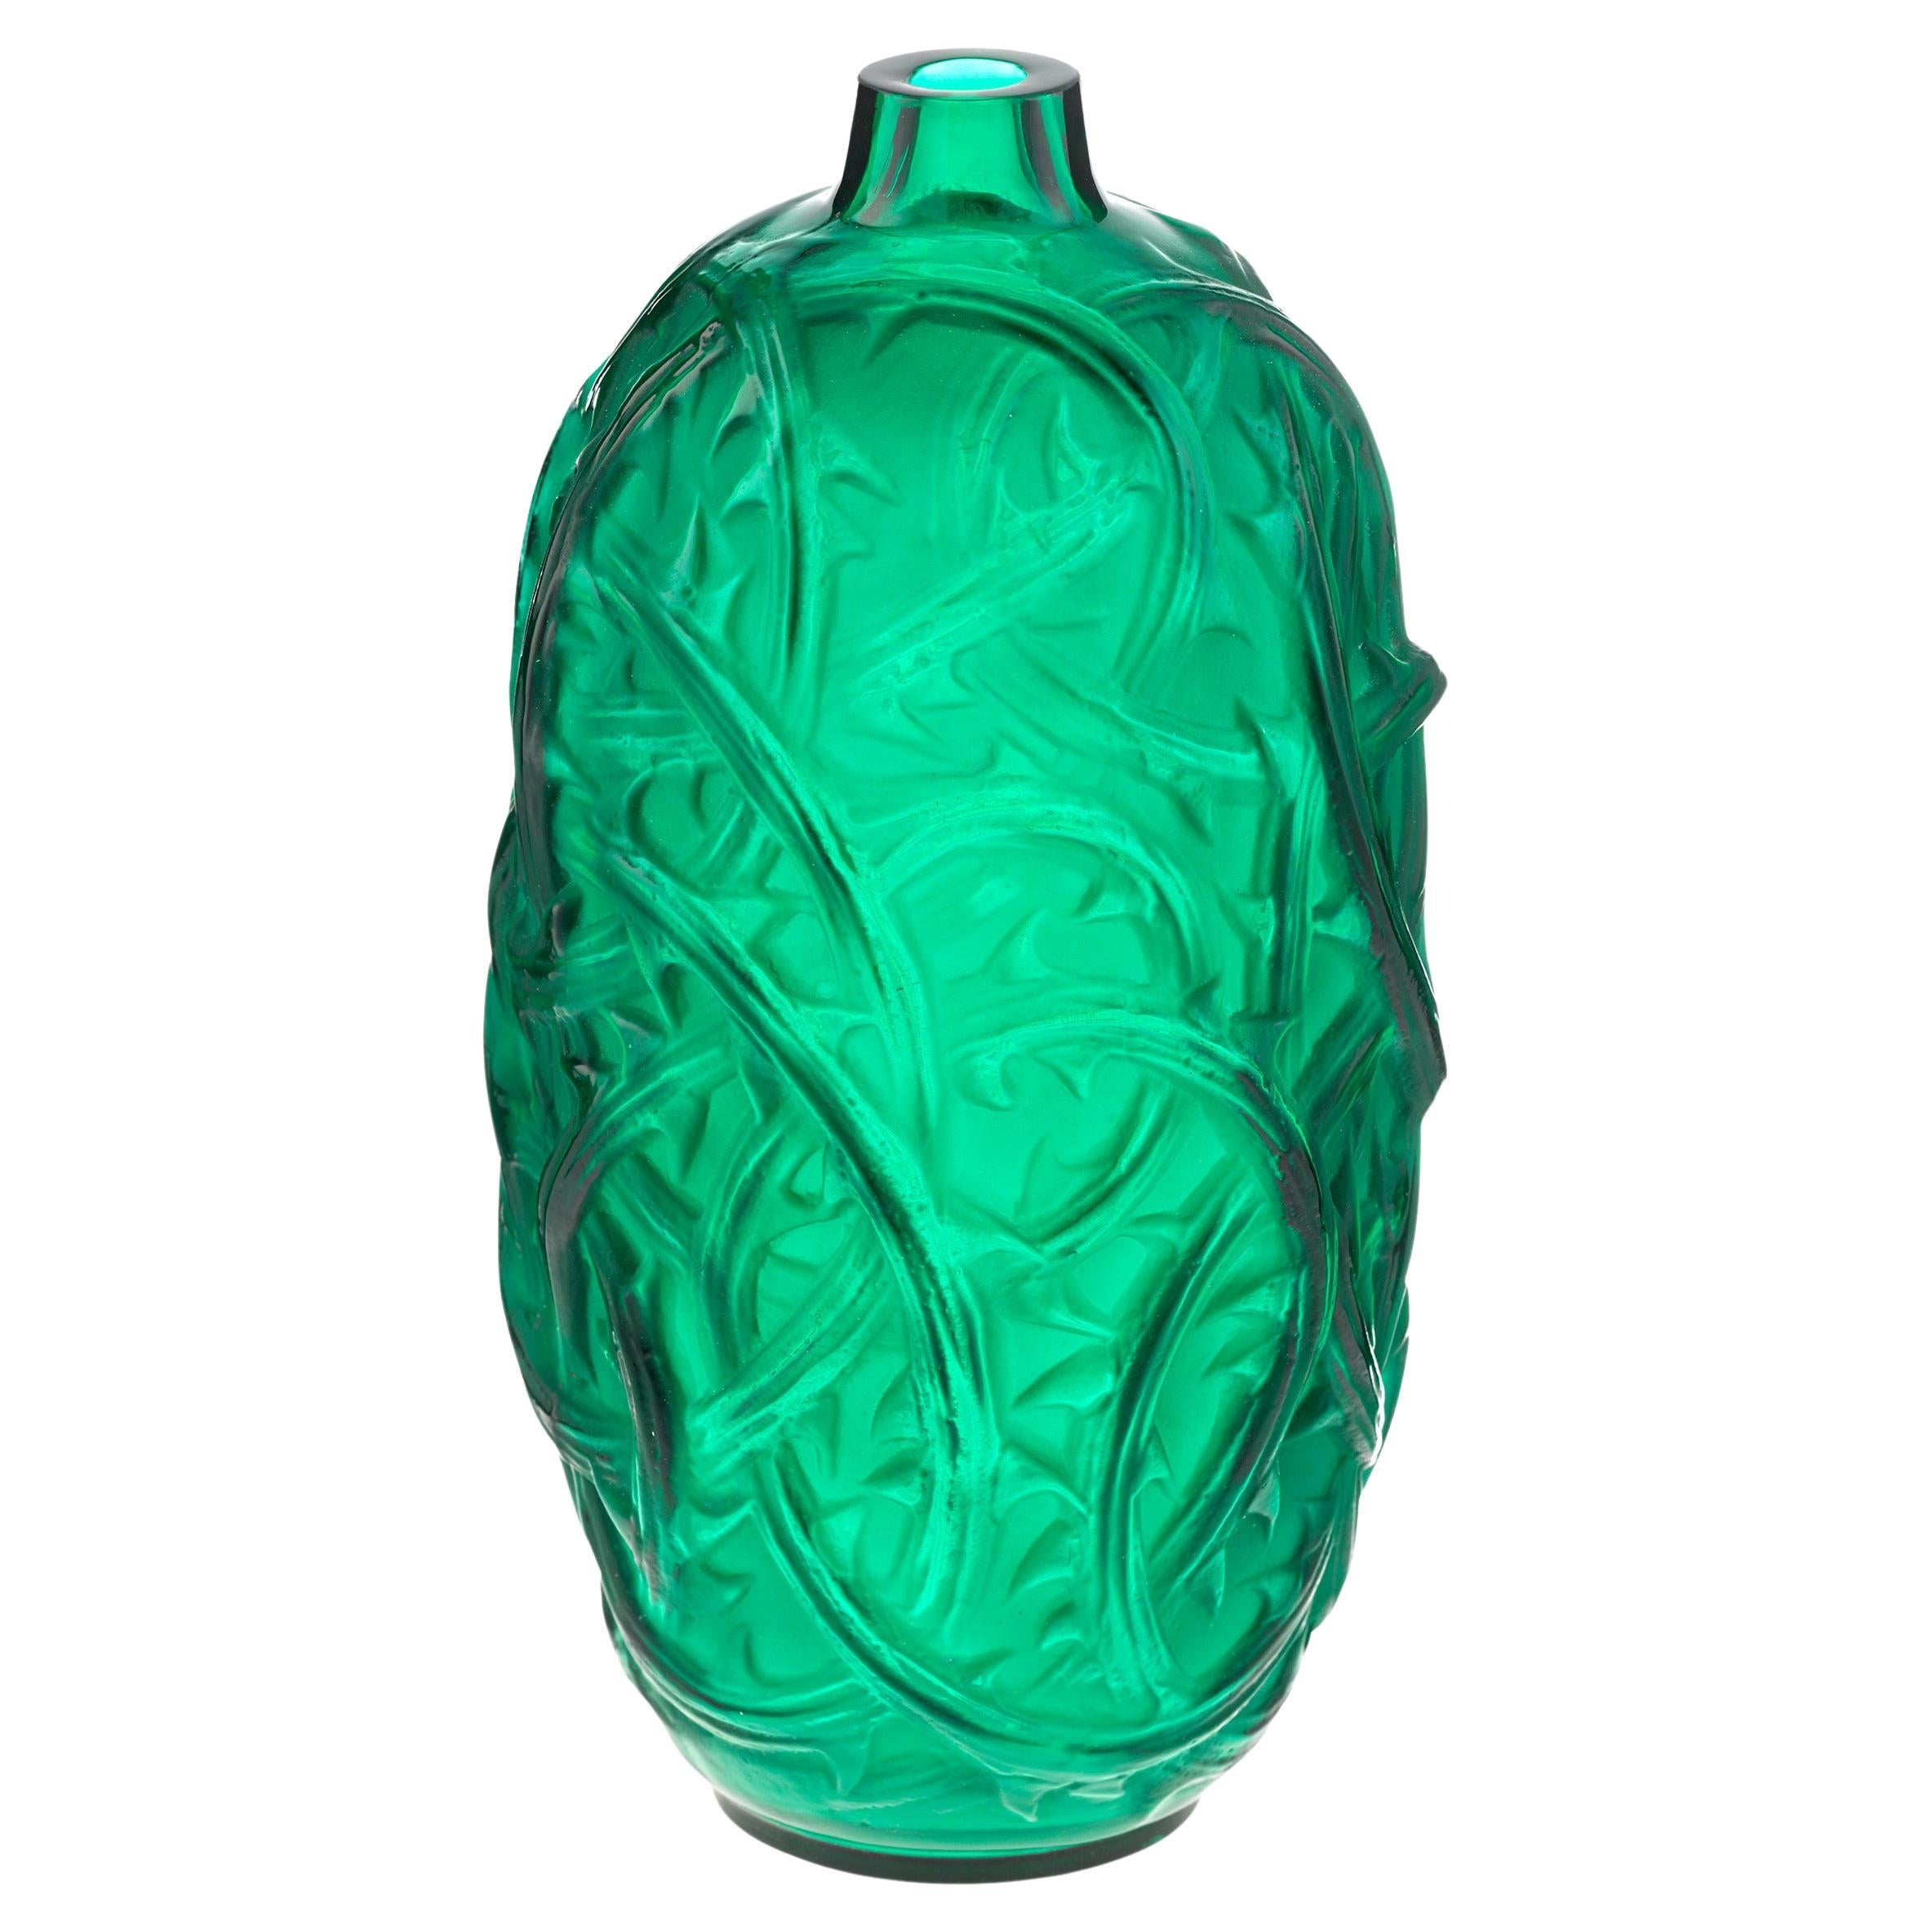 Green Ronces Vase By René Lalique For Sale